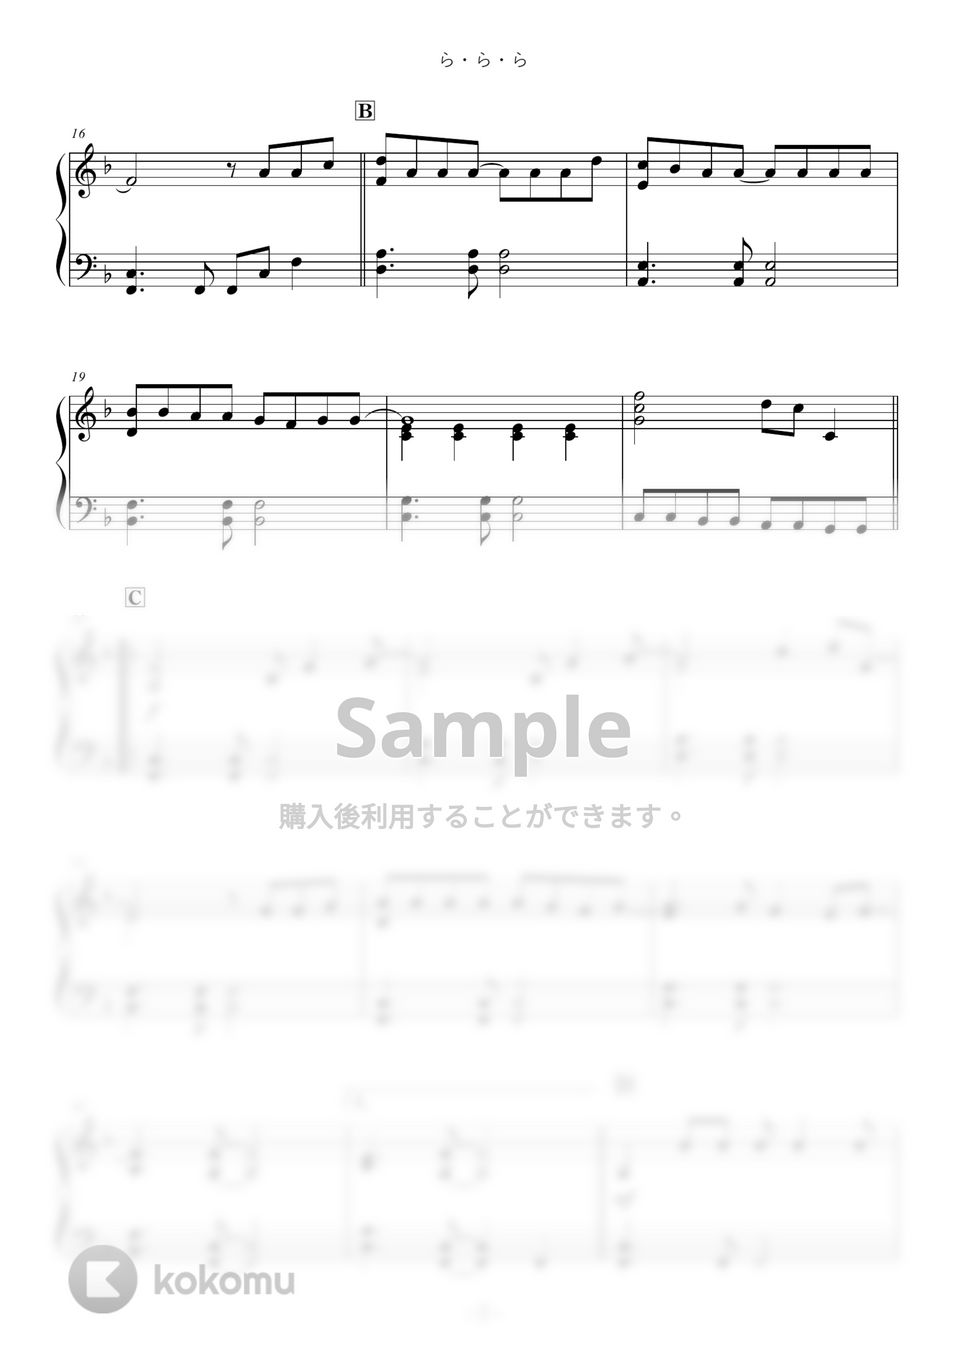 大黒摩季 - ら・ら・ら by ABIA Music